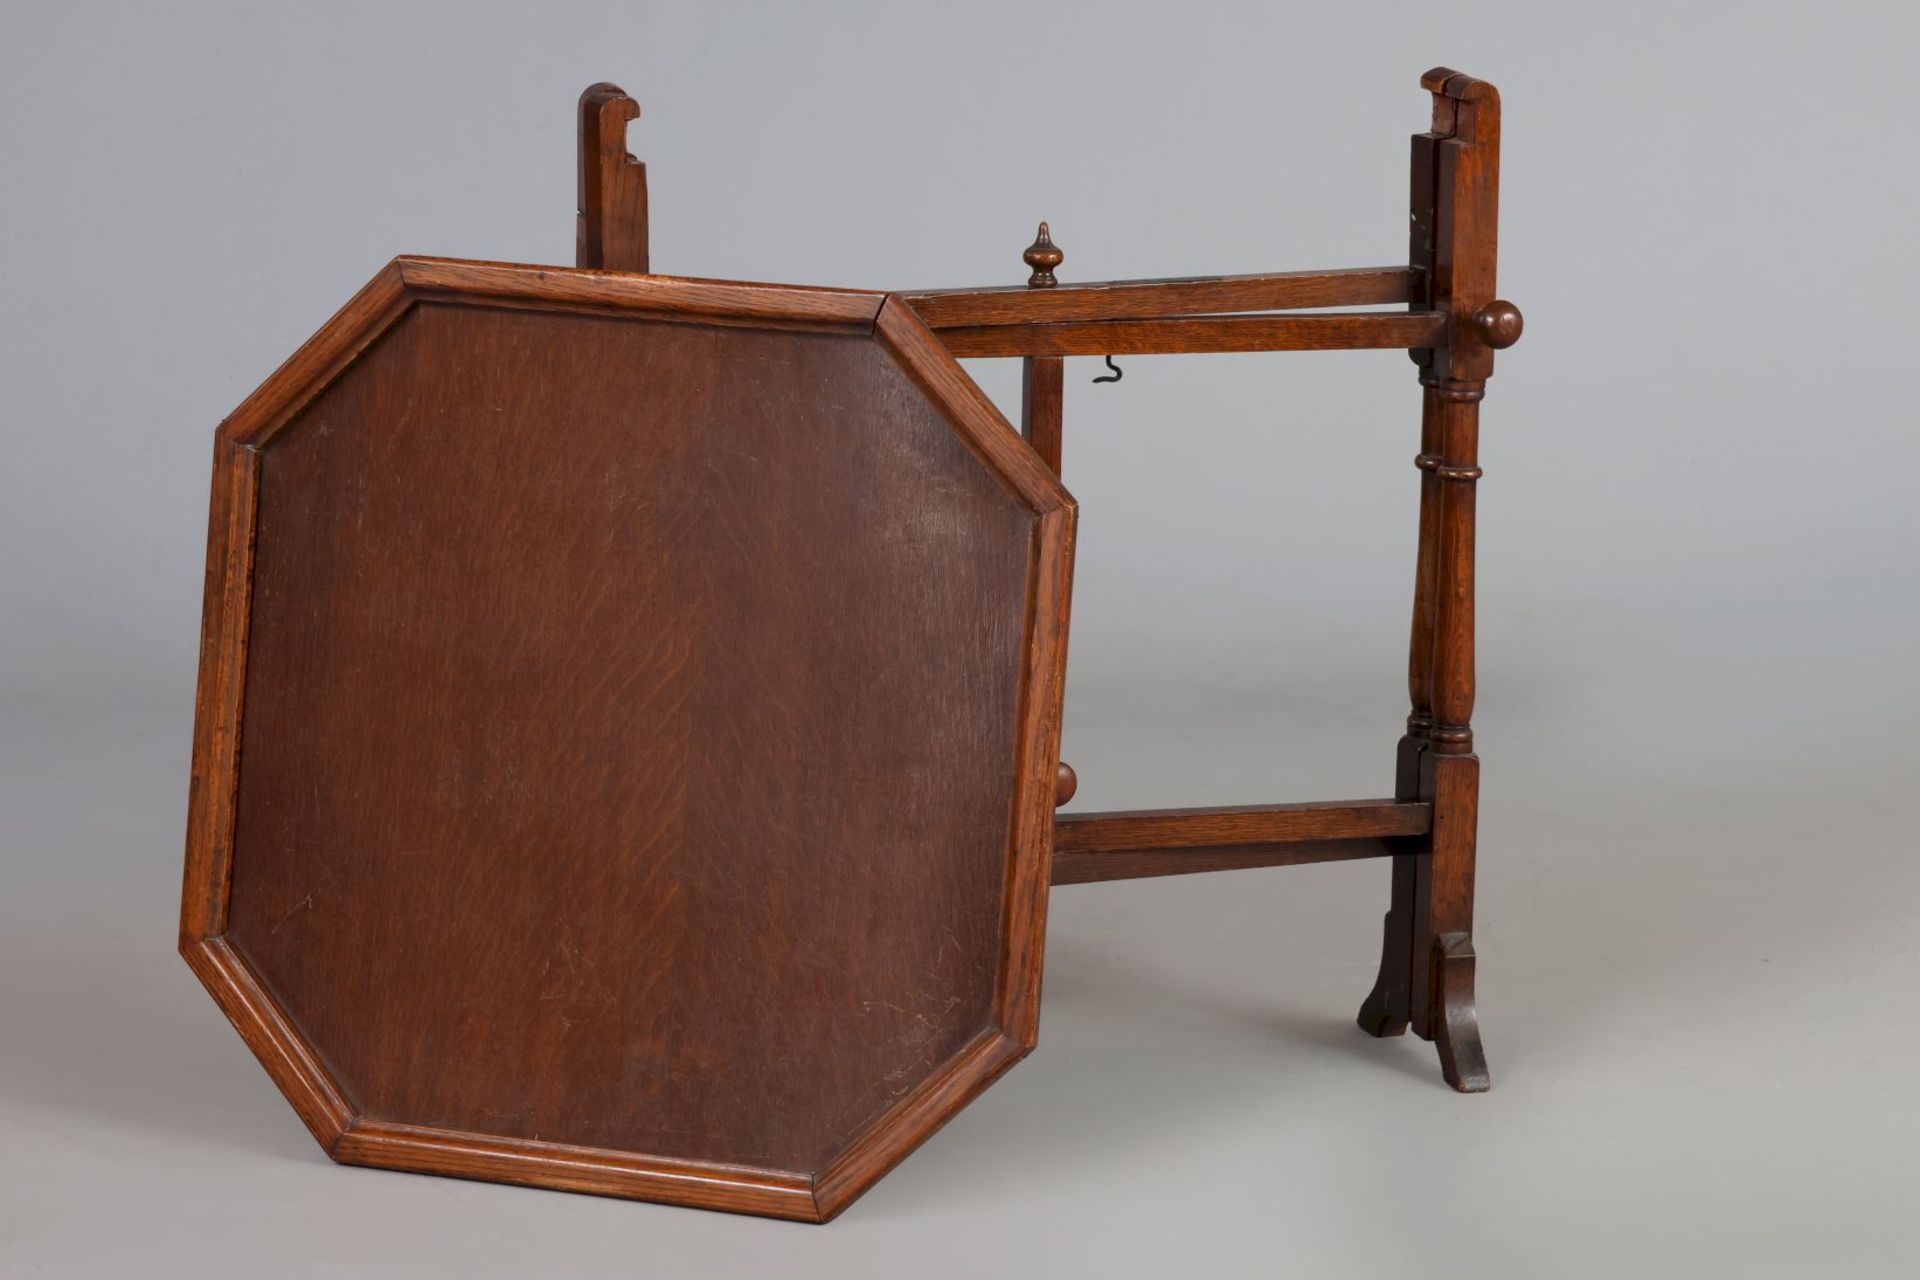 Englischer Klapptisch (¨tray-table¨) der 1920er Jahre - Image 2 of 5